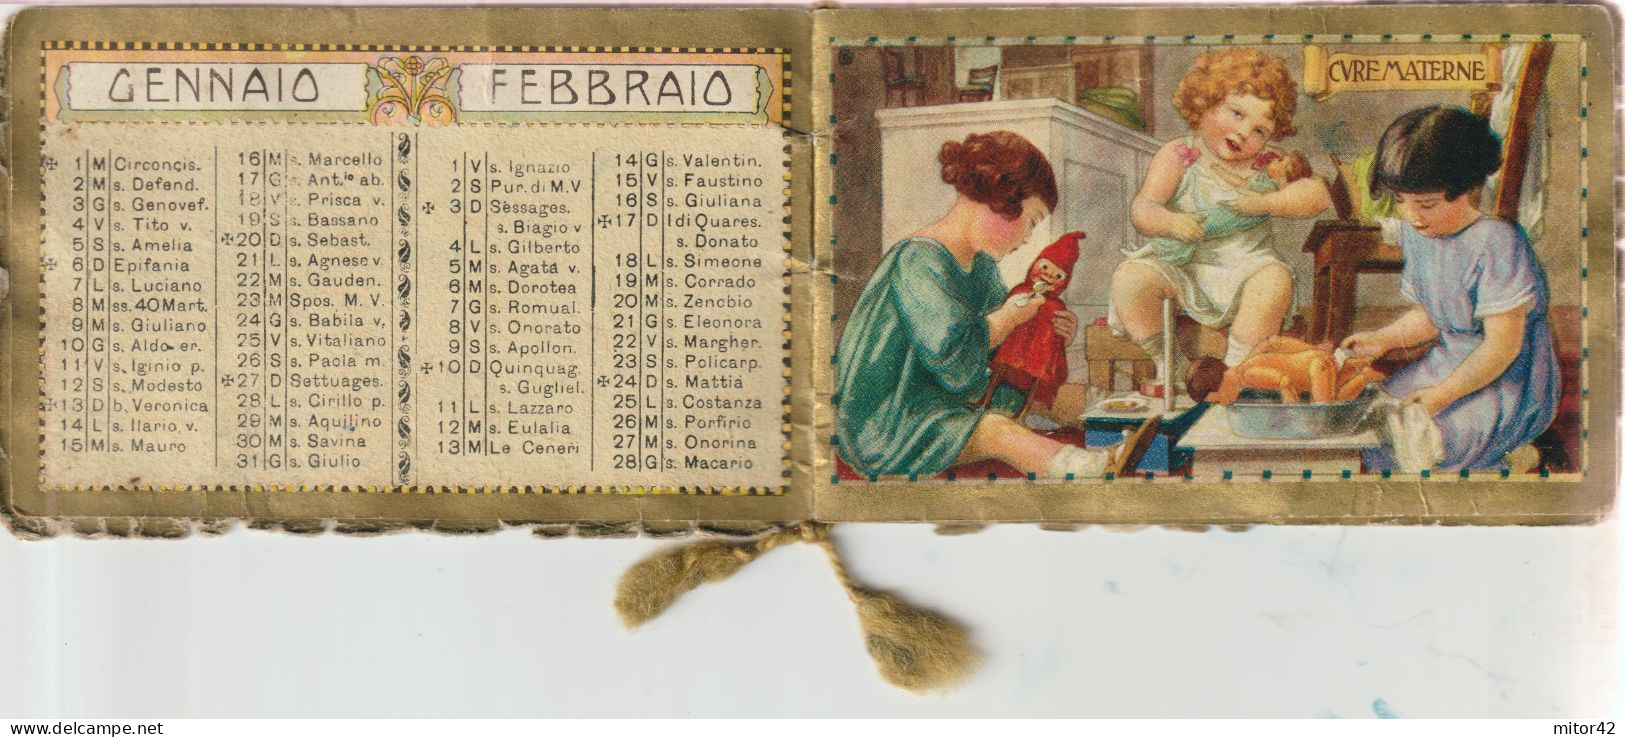 66-Calendarietto Da Barbiere-1928-Tendenze In Germoglio-Almanacco 1928 - Grand Format : 1941-60